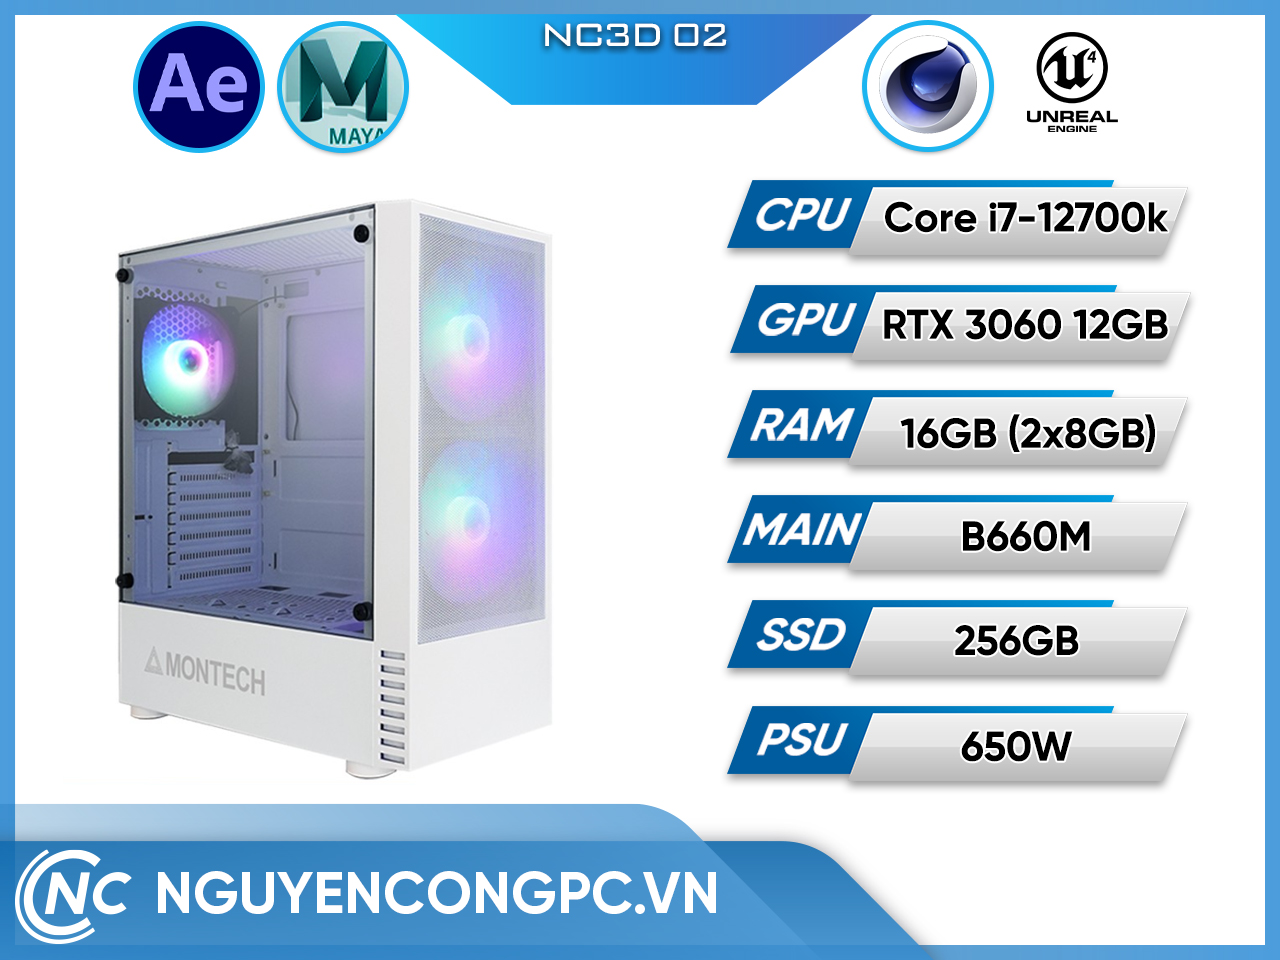 NC3D 02 (i7-12700K/B660/16G RAM/256GB SSD/3060 12Gb/Air Cooling)